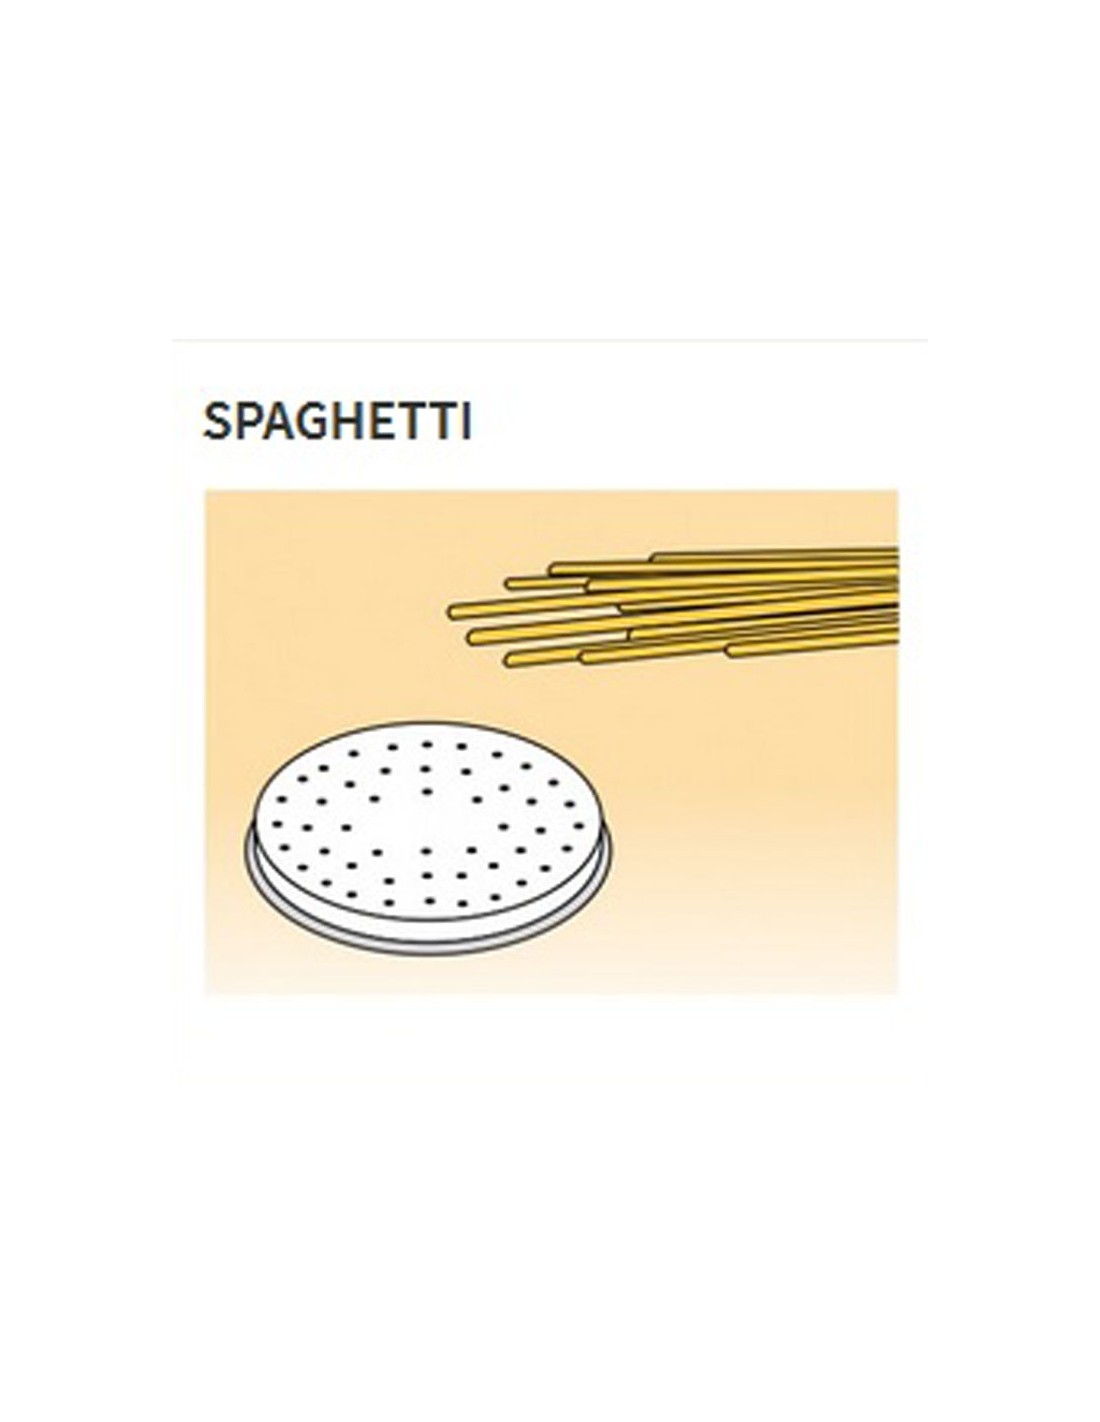 Trafile formati vari in lega ottone - Bronzo - Per macchina pasta fresca modello MPF8N - Spaghetti Ø mm 2